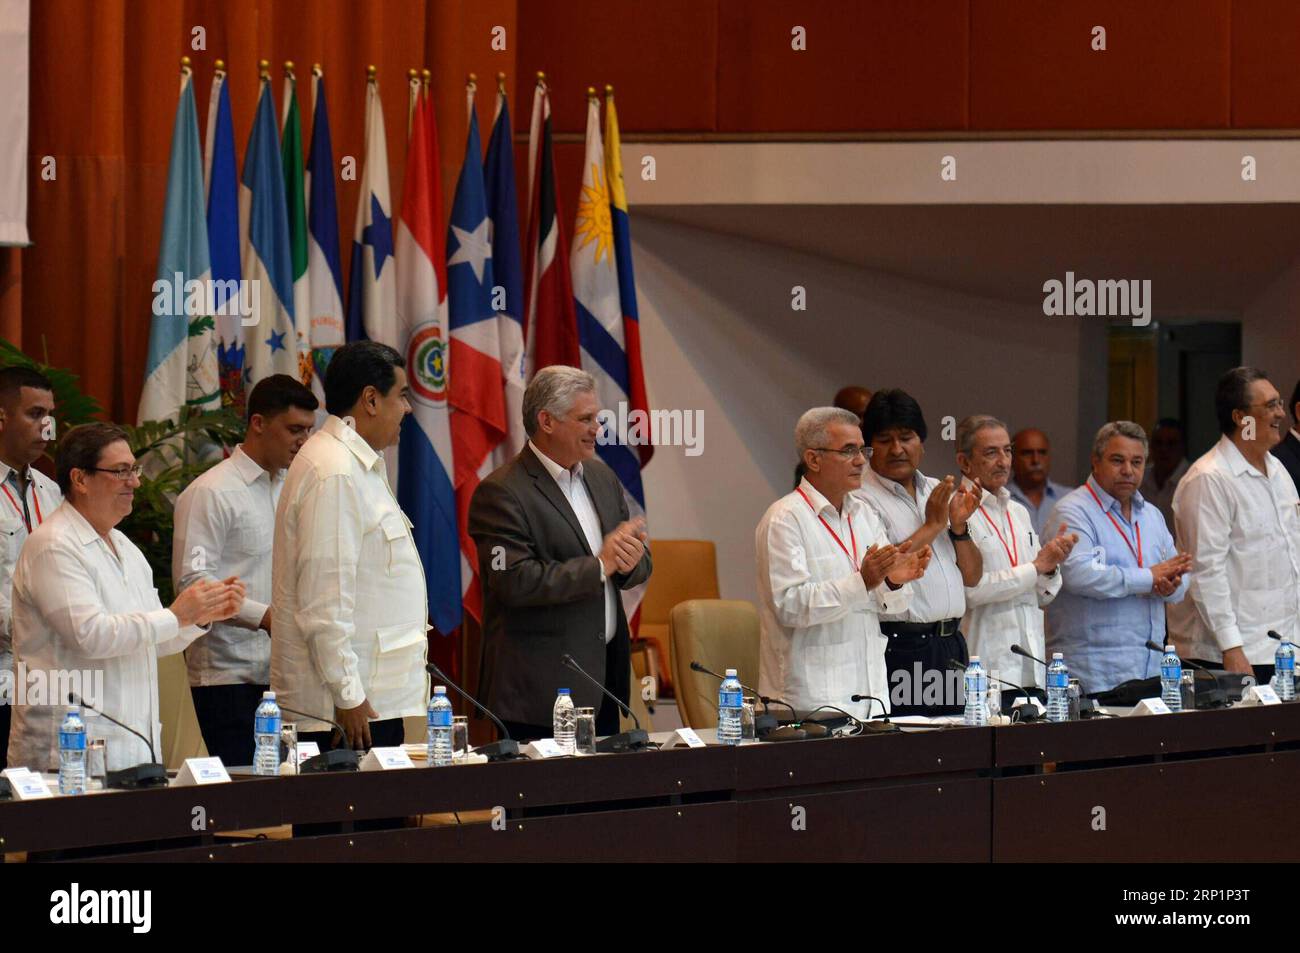 (180718) -- L'AVANA, 18 luglio 2018 -- il presidente cubano Miguel Diaz-Canel (3° L, fronte), il presidente venezuelano Nicolas Maduro (2° L, fronte) e il presidente boliviano Evo Morales (4° R, fronte) reagiscono durante l'ultimo giorno del Forum di San Paolo, tenutosi a Cuba il 17 luglio 2018. La riunione annuale del Forum di San Paolo mira a raccogliere consenso sulle azioni future per i partiti e le organizzazioni politici di sinistra in America Latina. ) (rtg) (ah) (Ly) CUBA-L'AVANA-SAN PAOLO FORUM STR PUBLICATIONxNOTxINxCHN Foto Stock